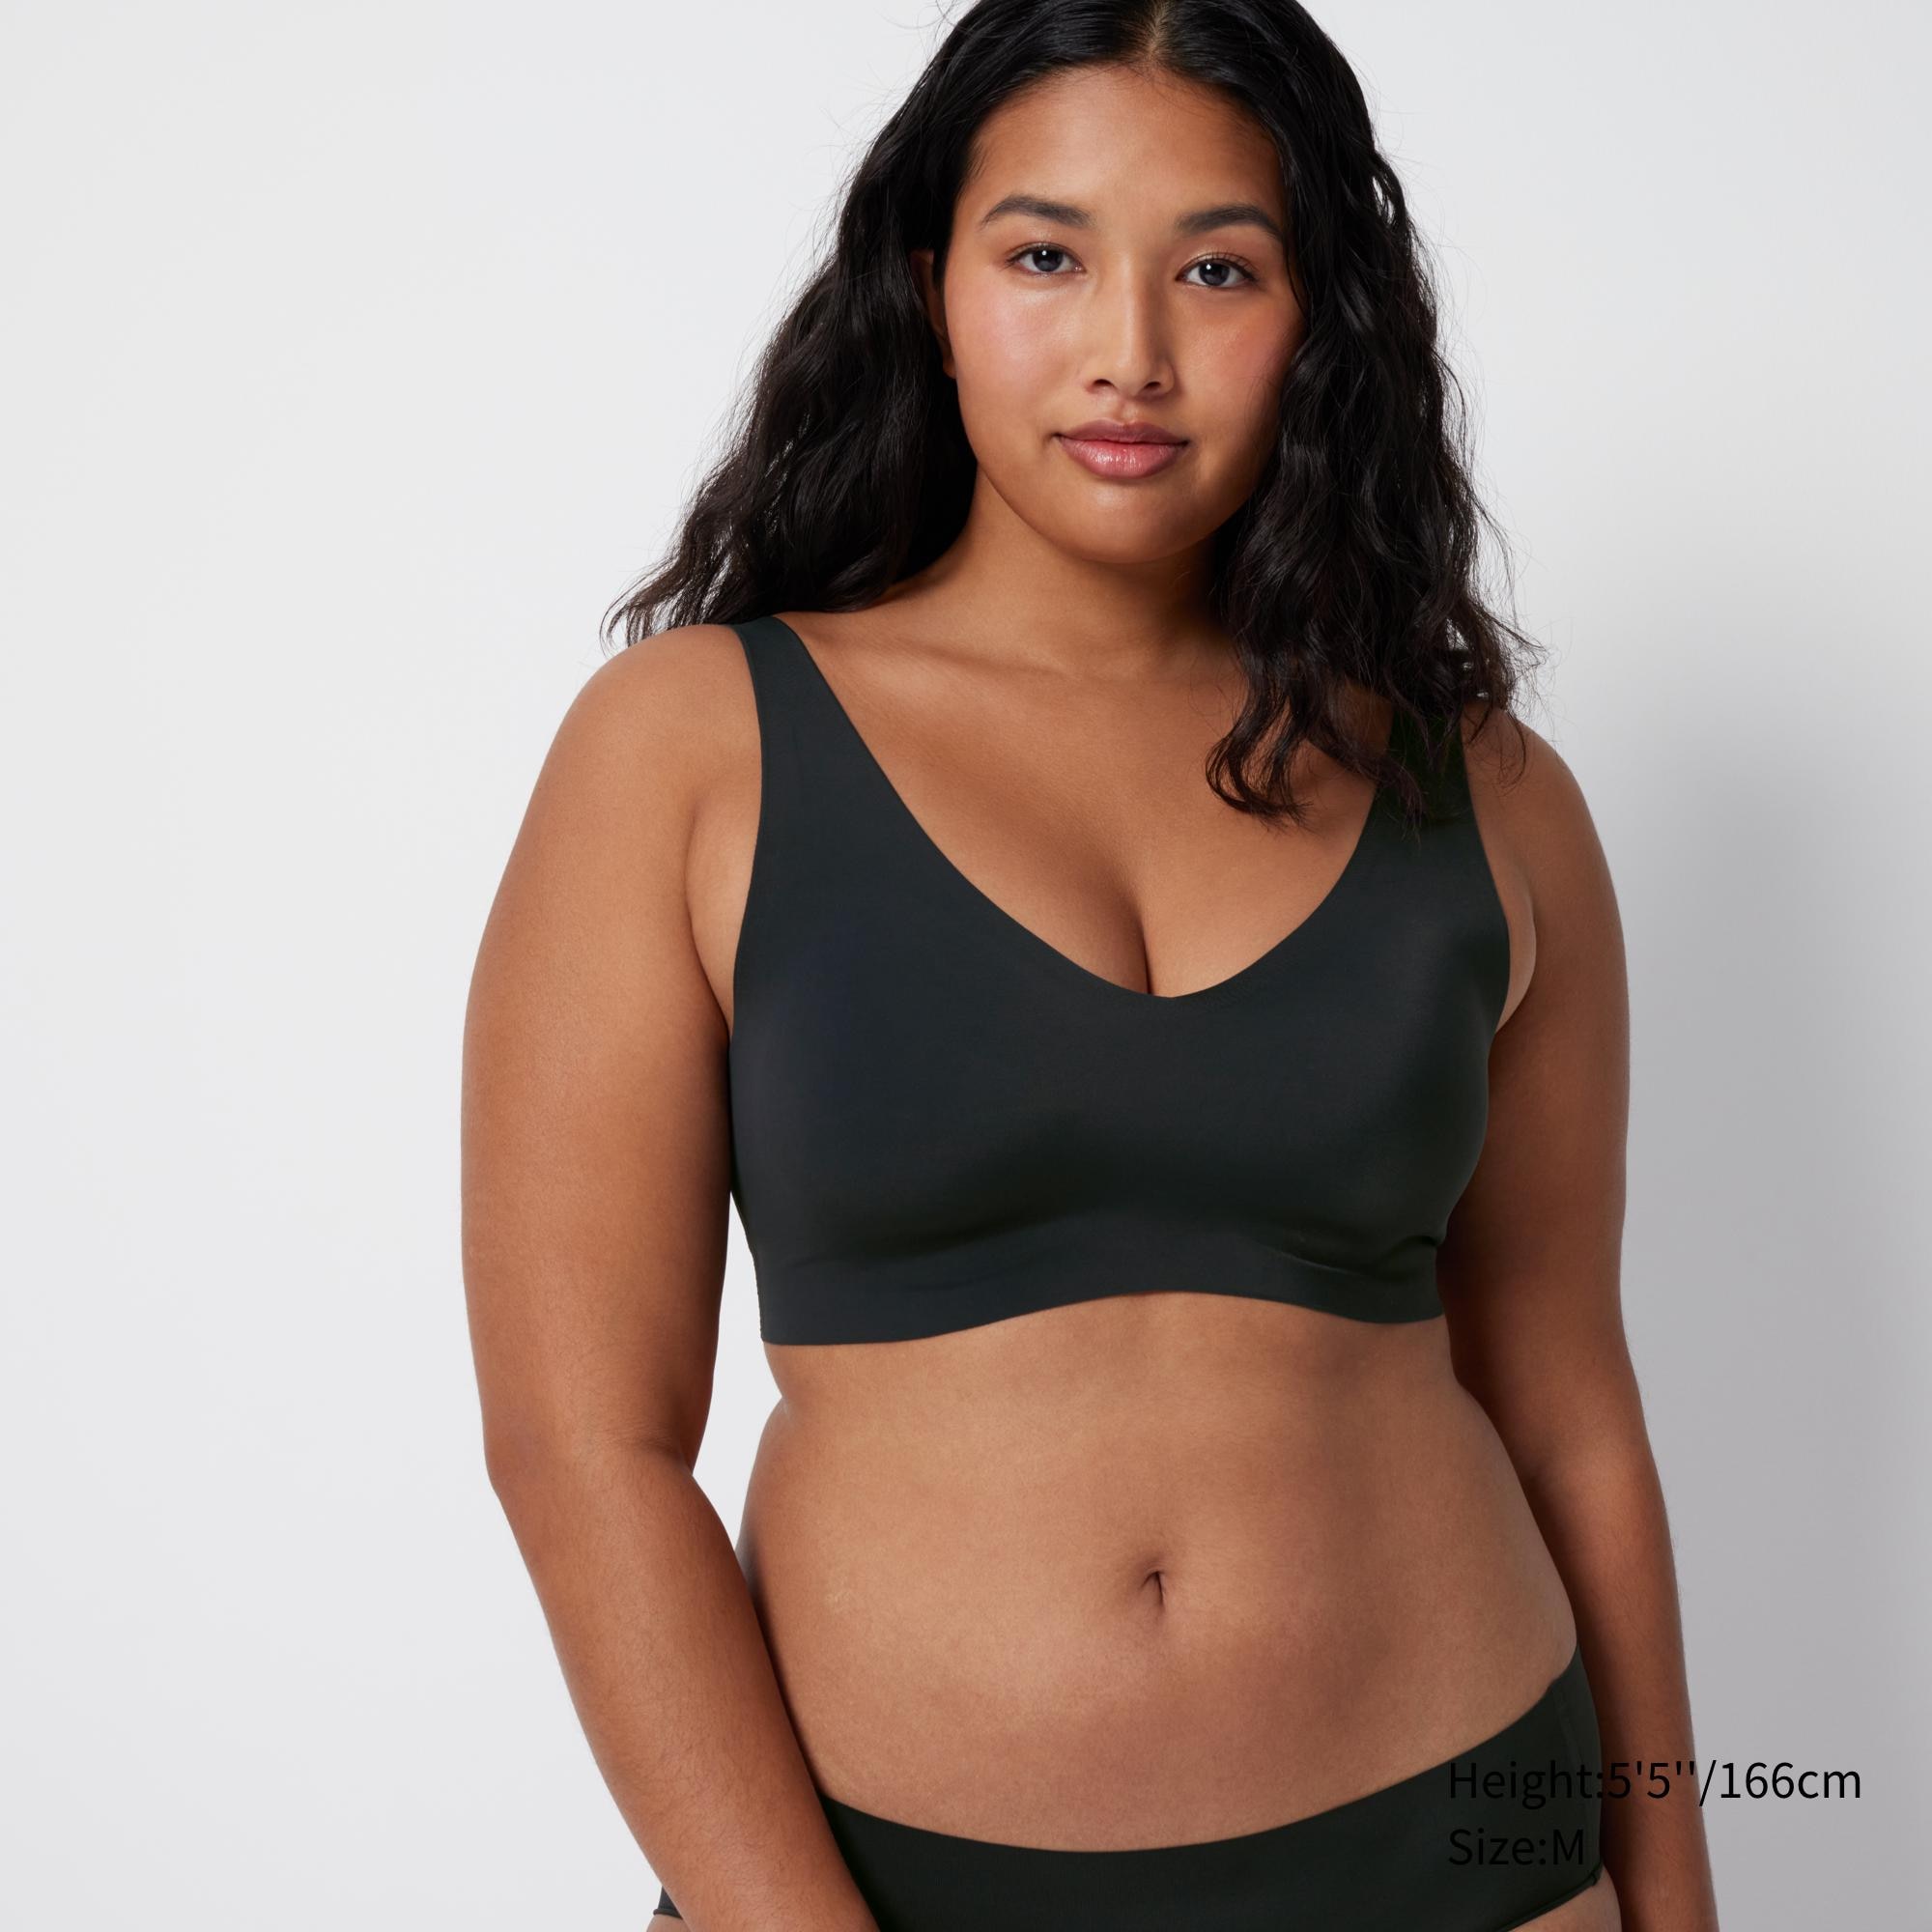 11.11 SALE!!! Uniqlo bras size B70 black and natural bra, Women's